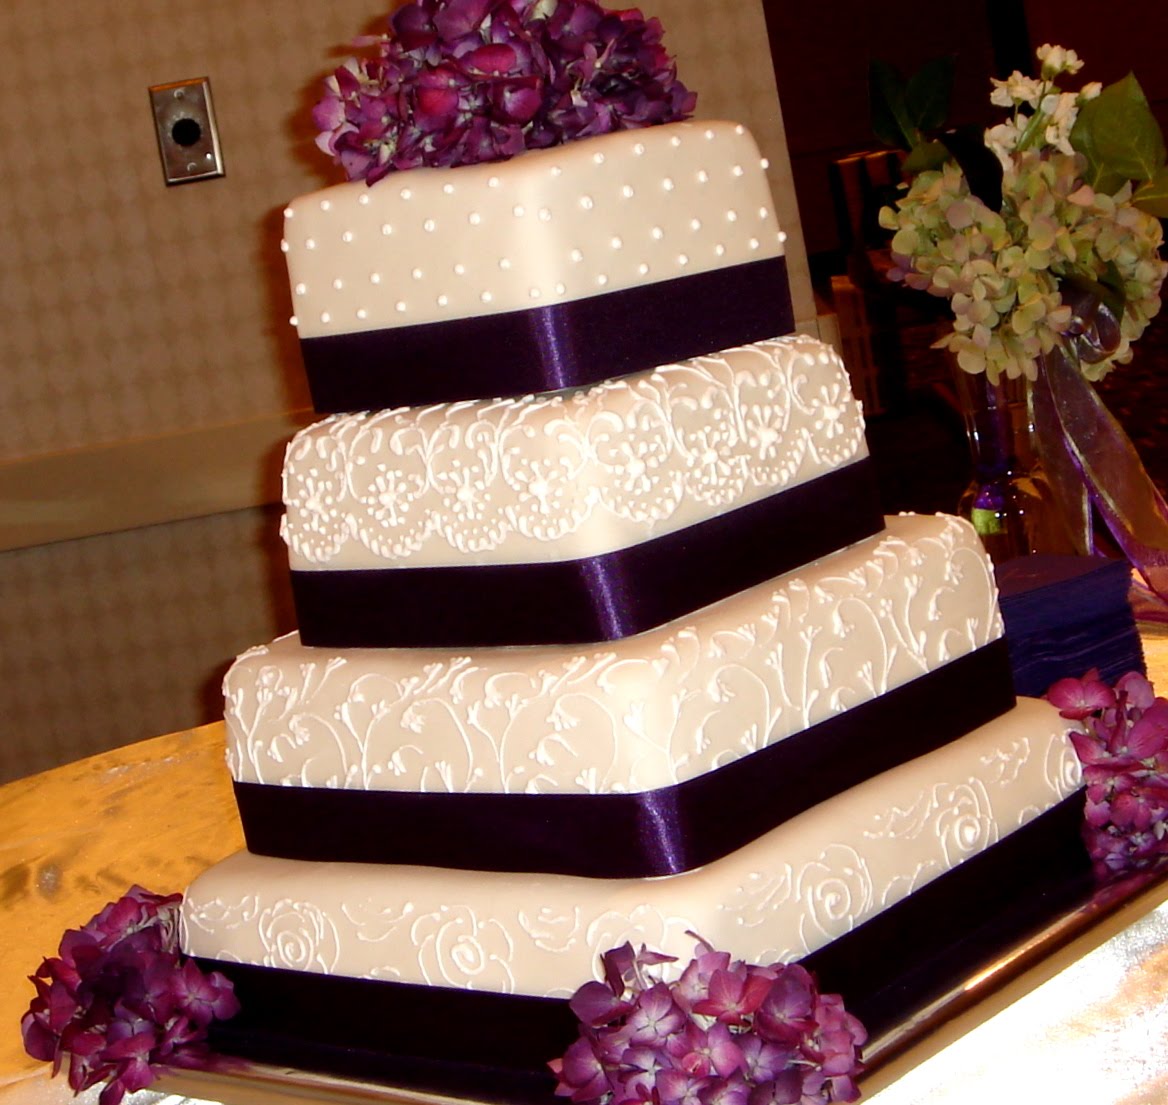 fondant wedding cake with